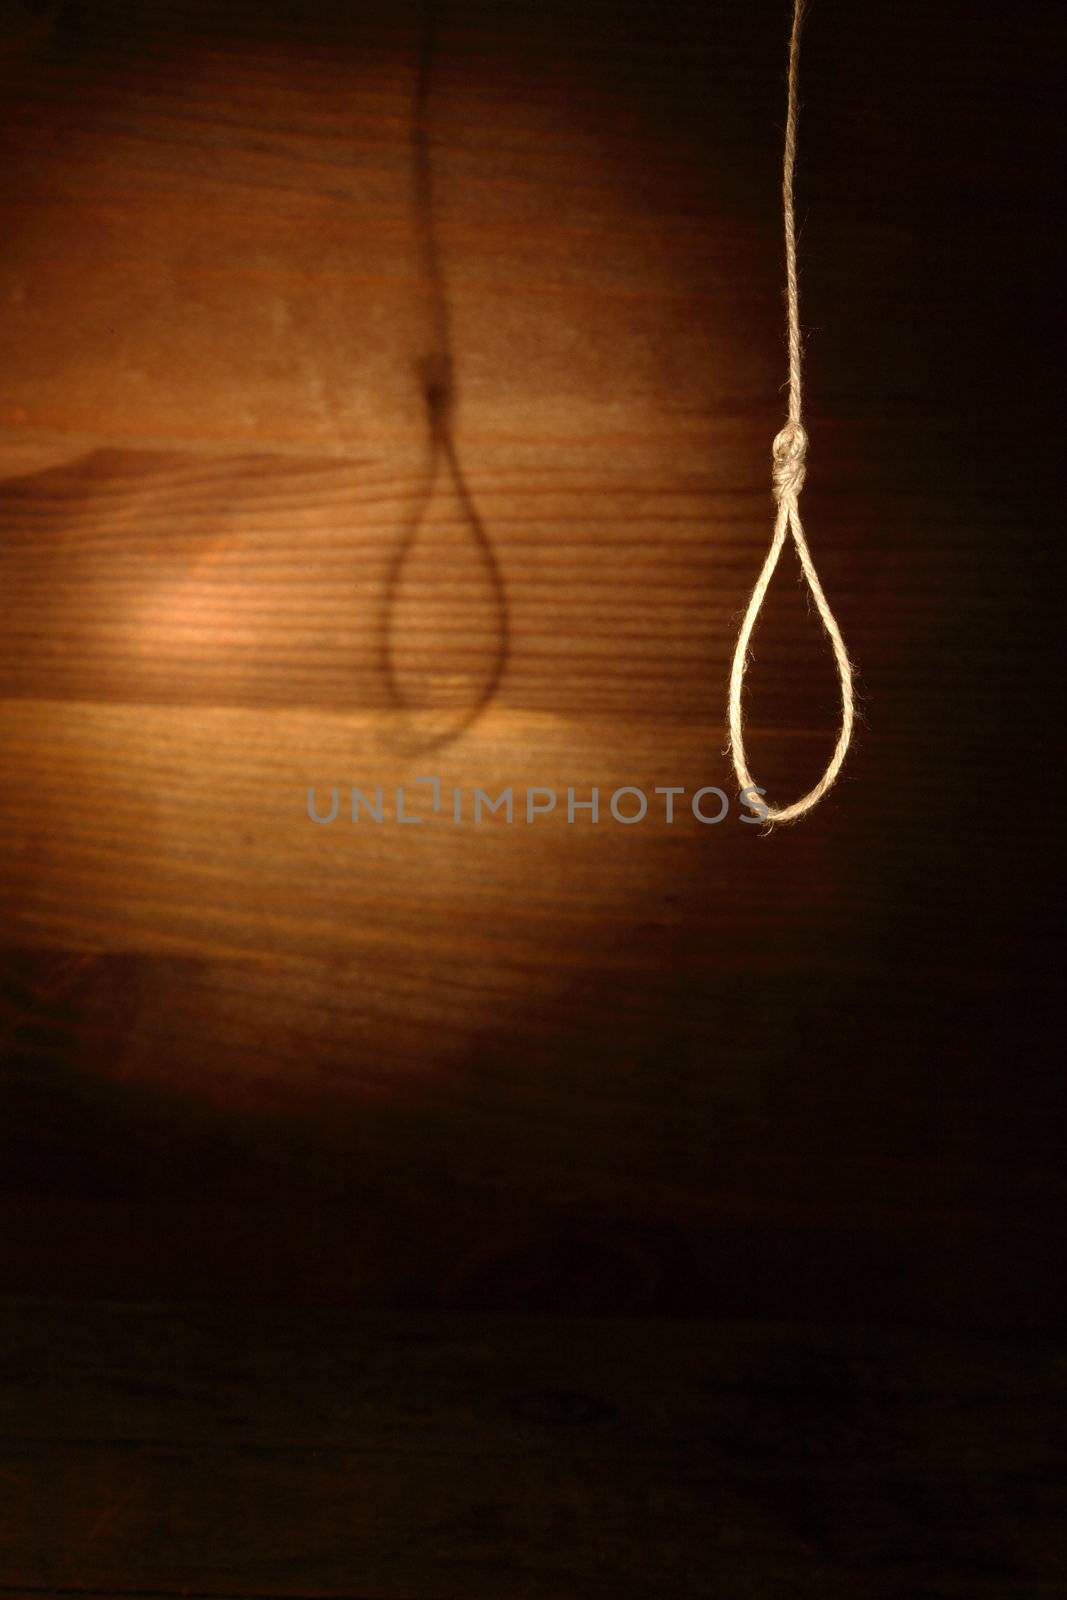 Rope loop hanging on gloomy wooden background